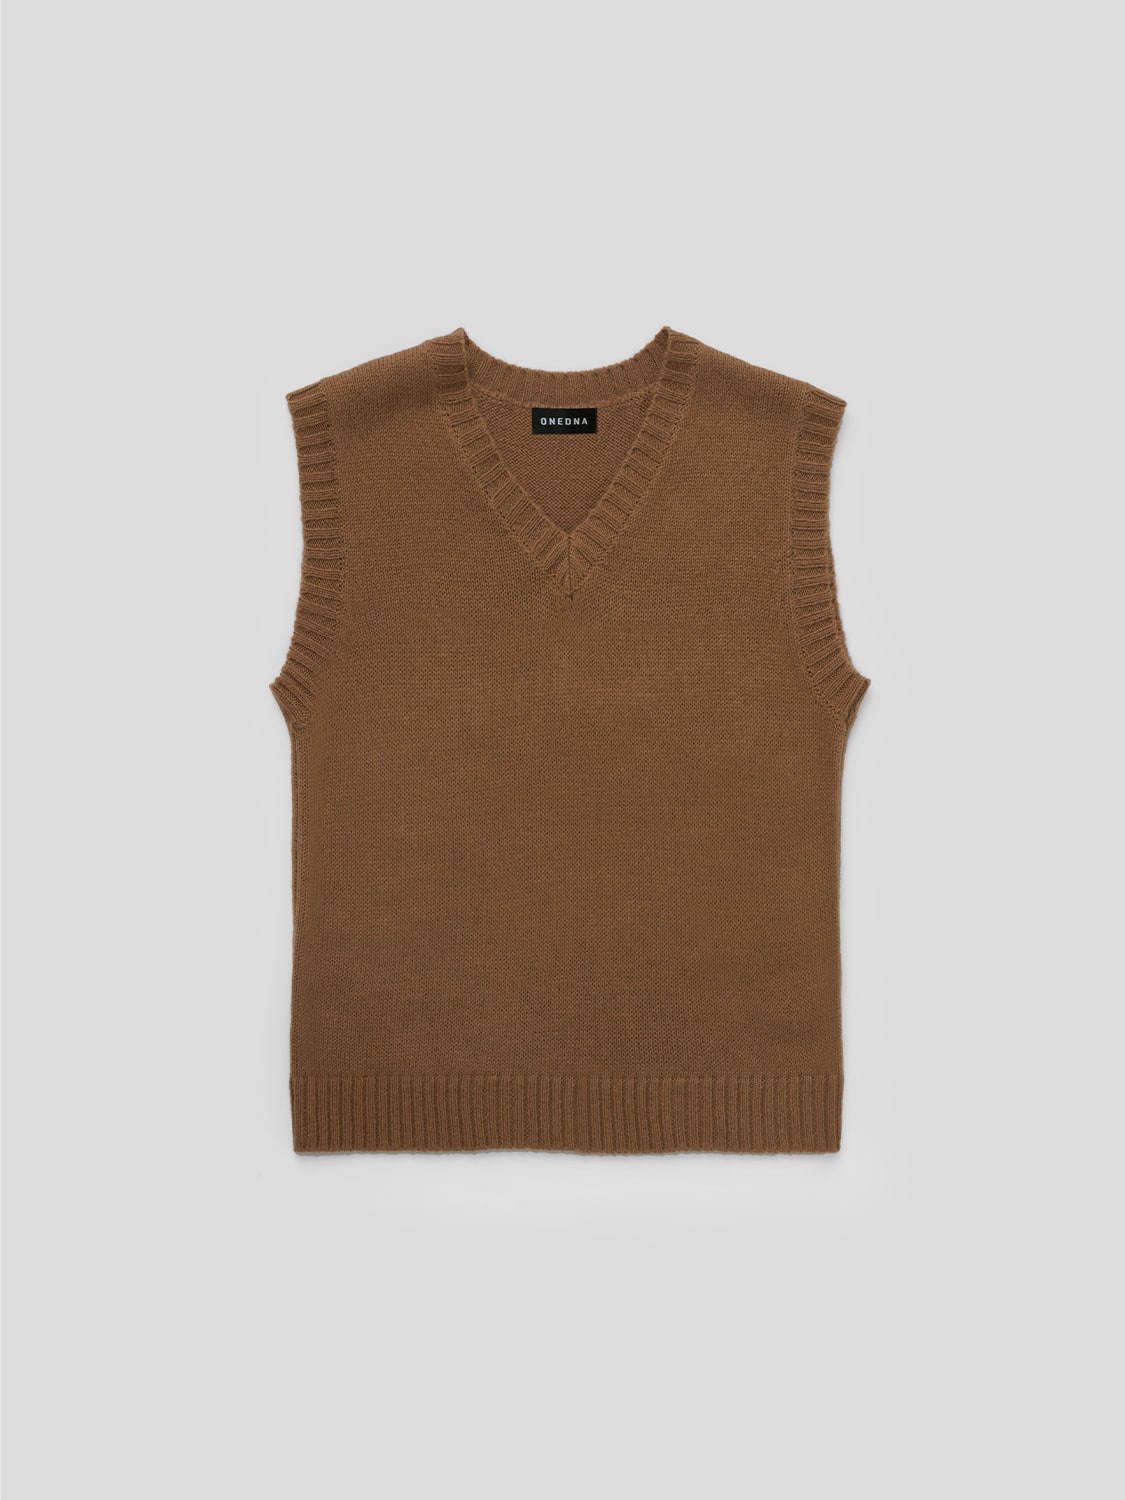 Olsen Sweater Vest Camel – One DNA